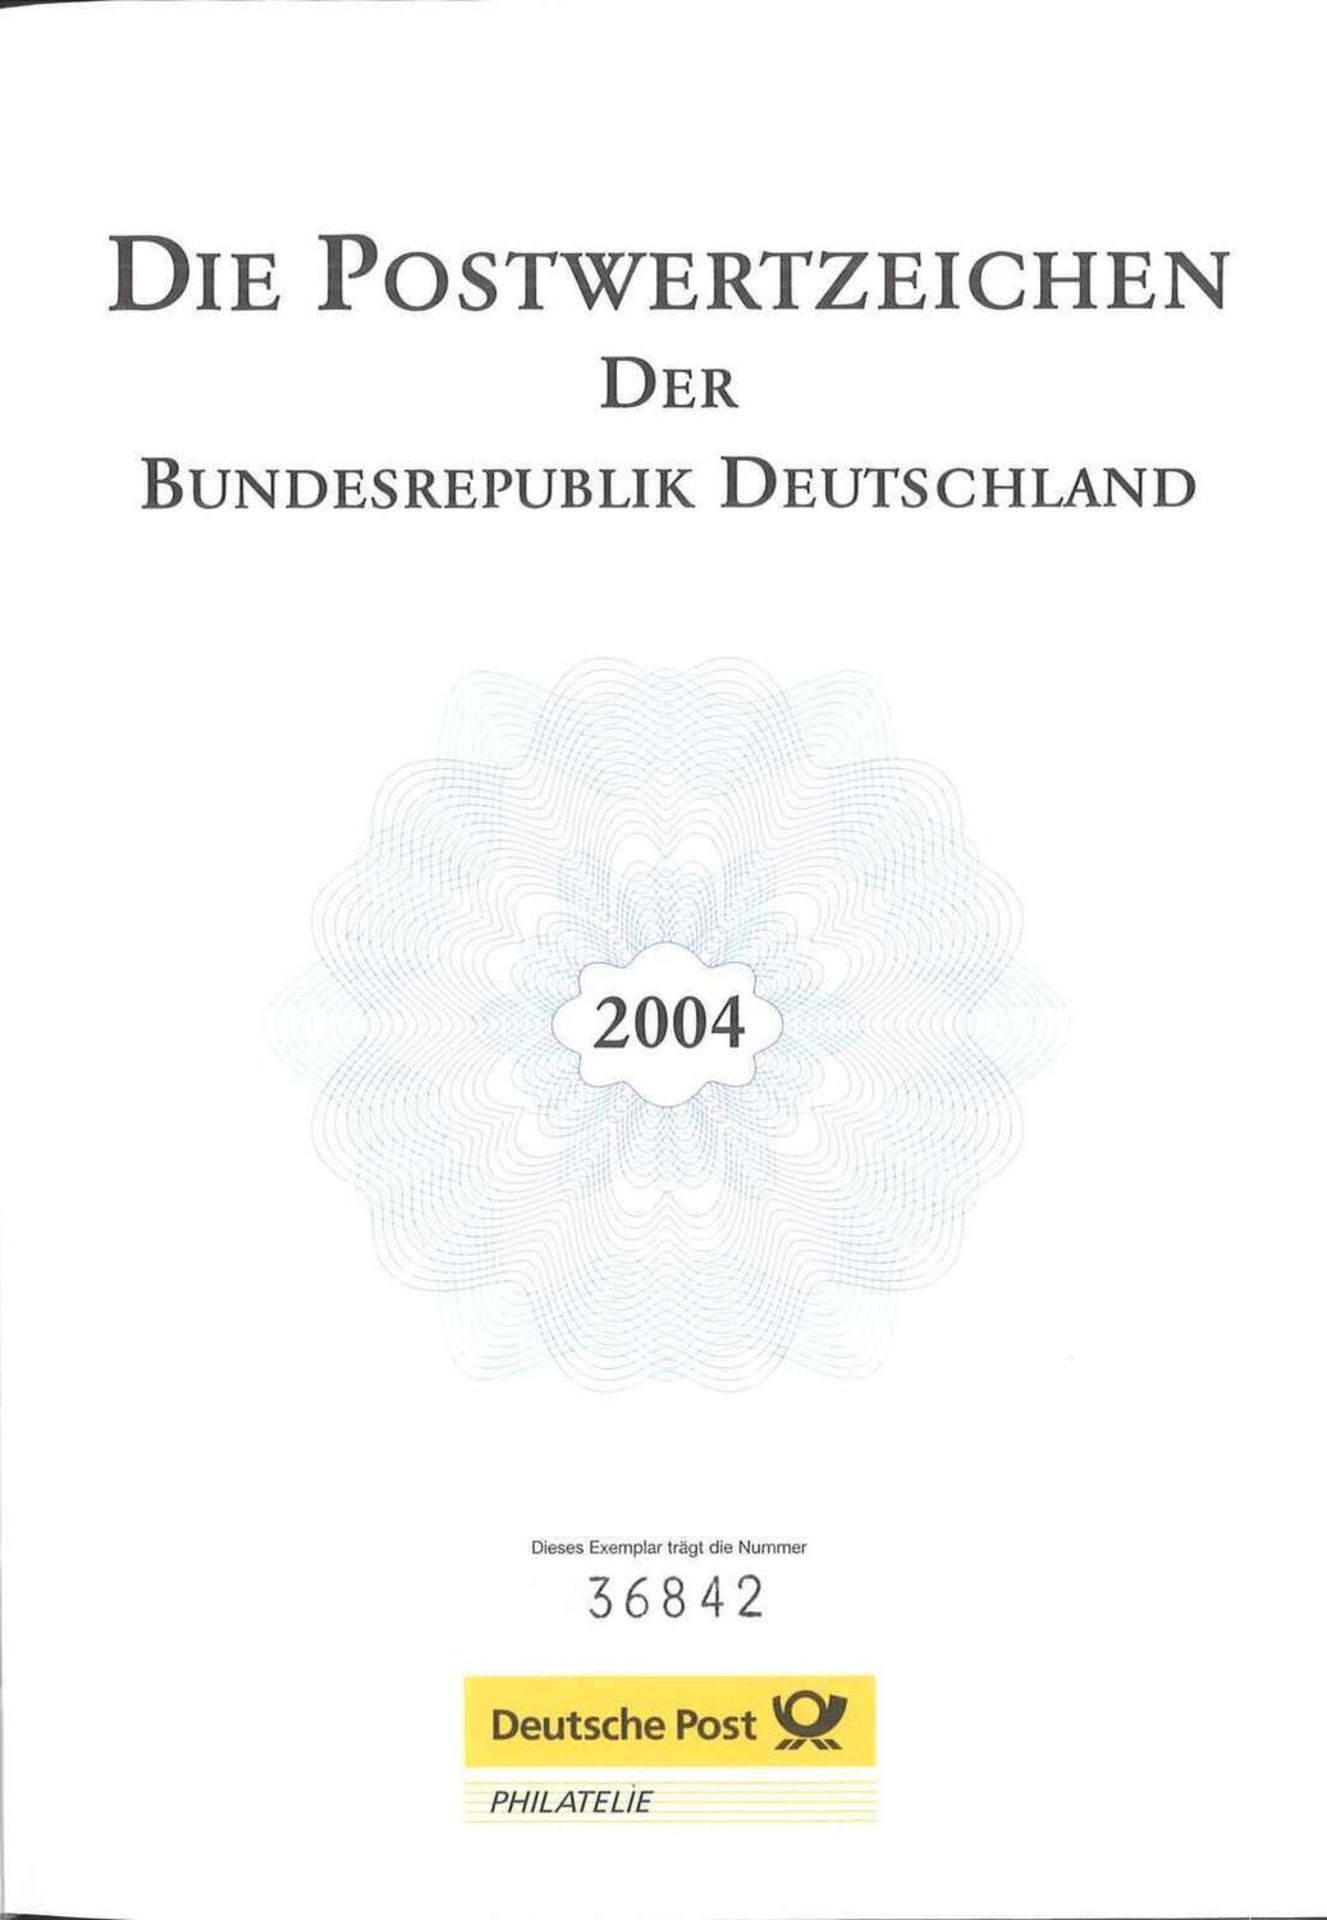 Die Postwertzeichen der BRD 2004 im Schuber. Marken postfrisch Frankaturware neu. Top Zustand. The